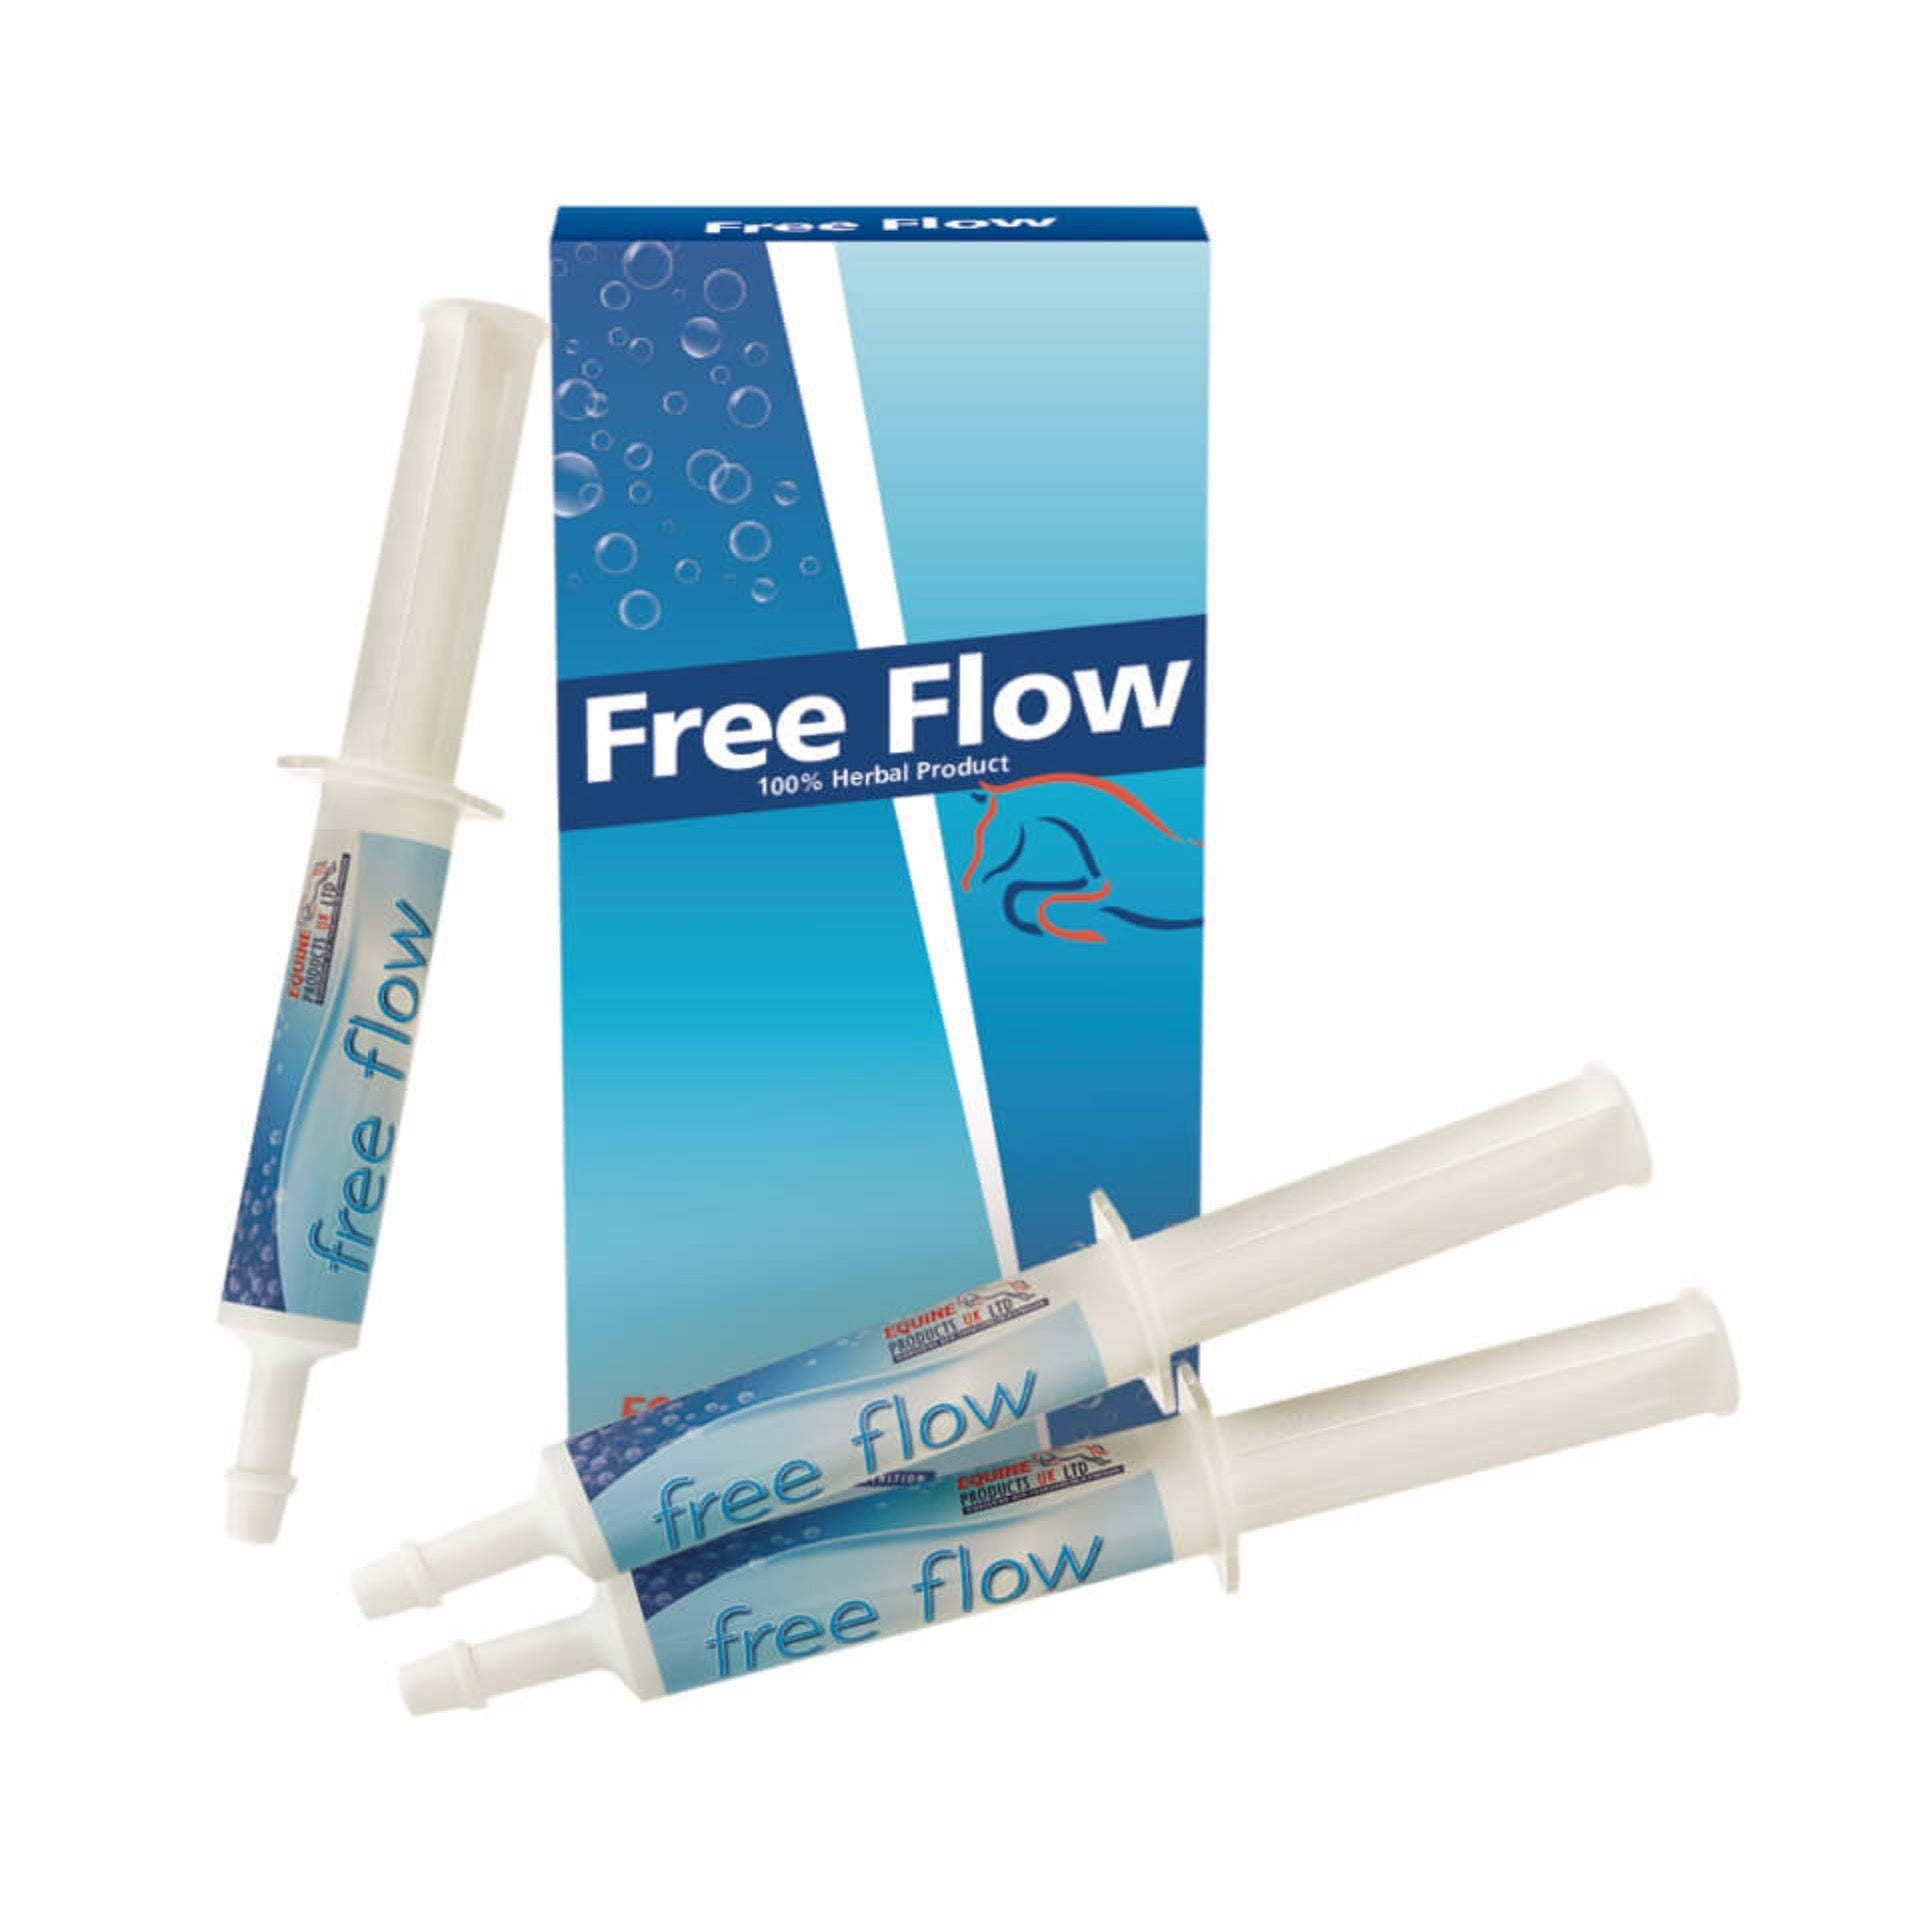 Free Flow 3 x 30g